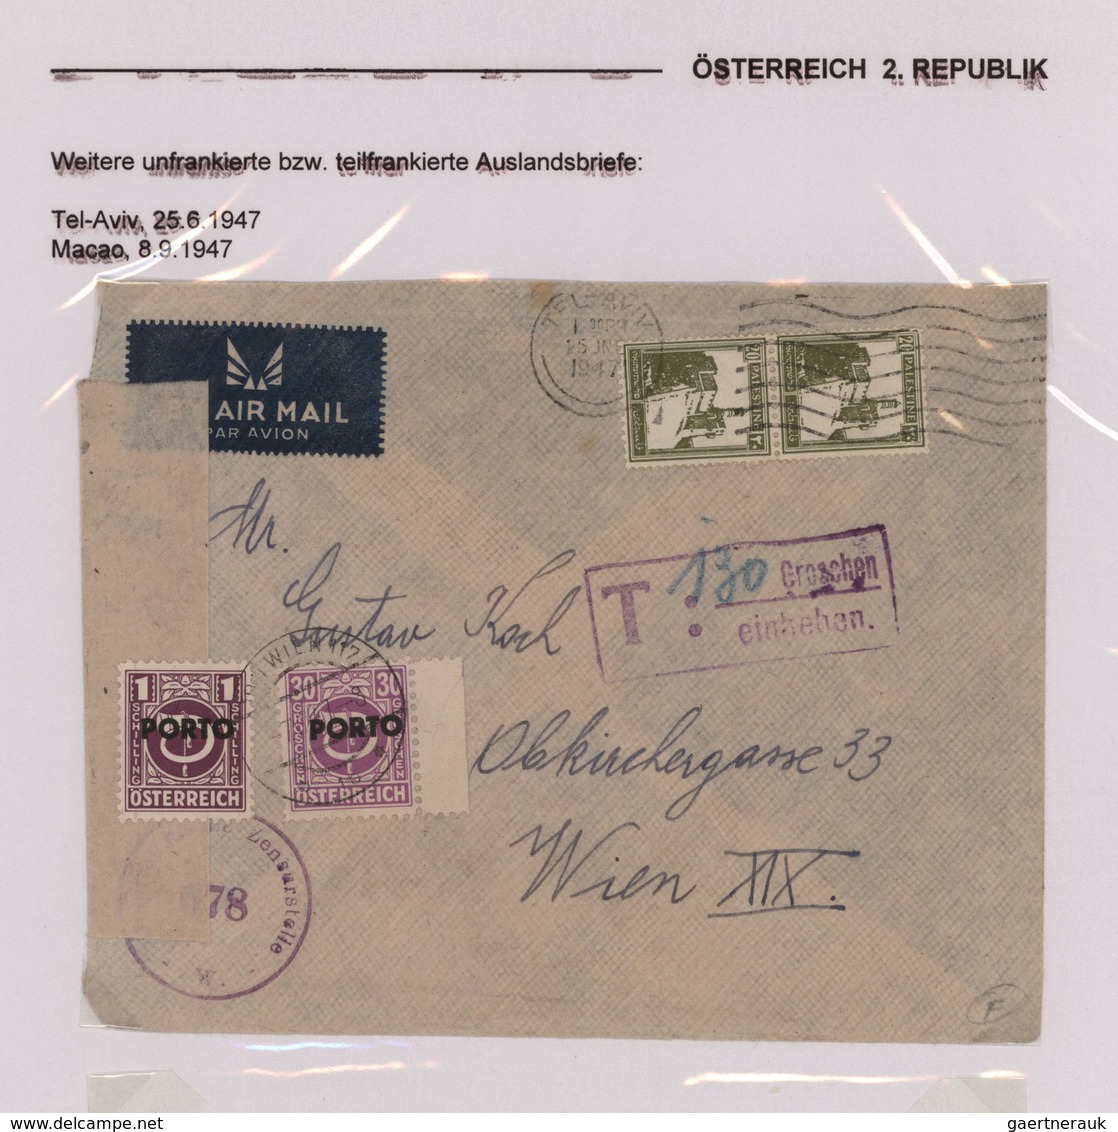 Österreich - Portomarken: 1945/1949, sehr gehaltvolle Ausstellungs-Sammlung mit ca.90 Belegen, dabei